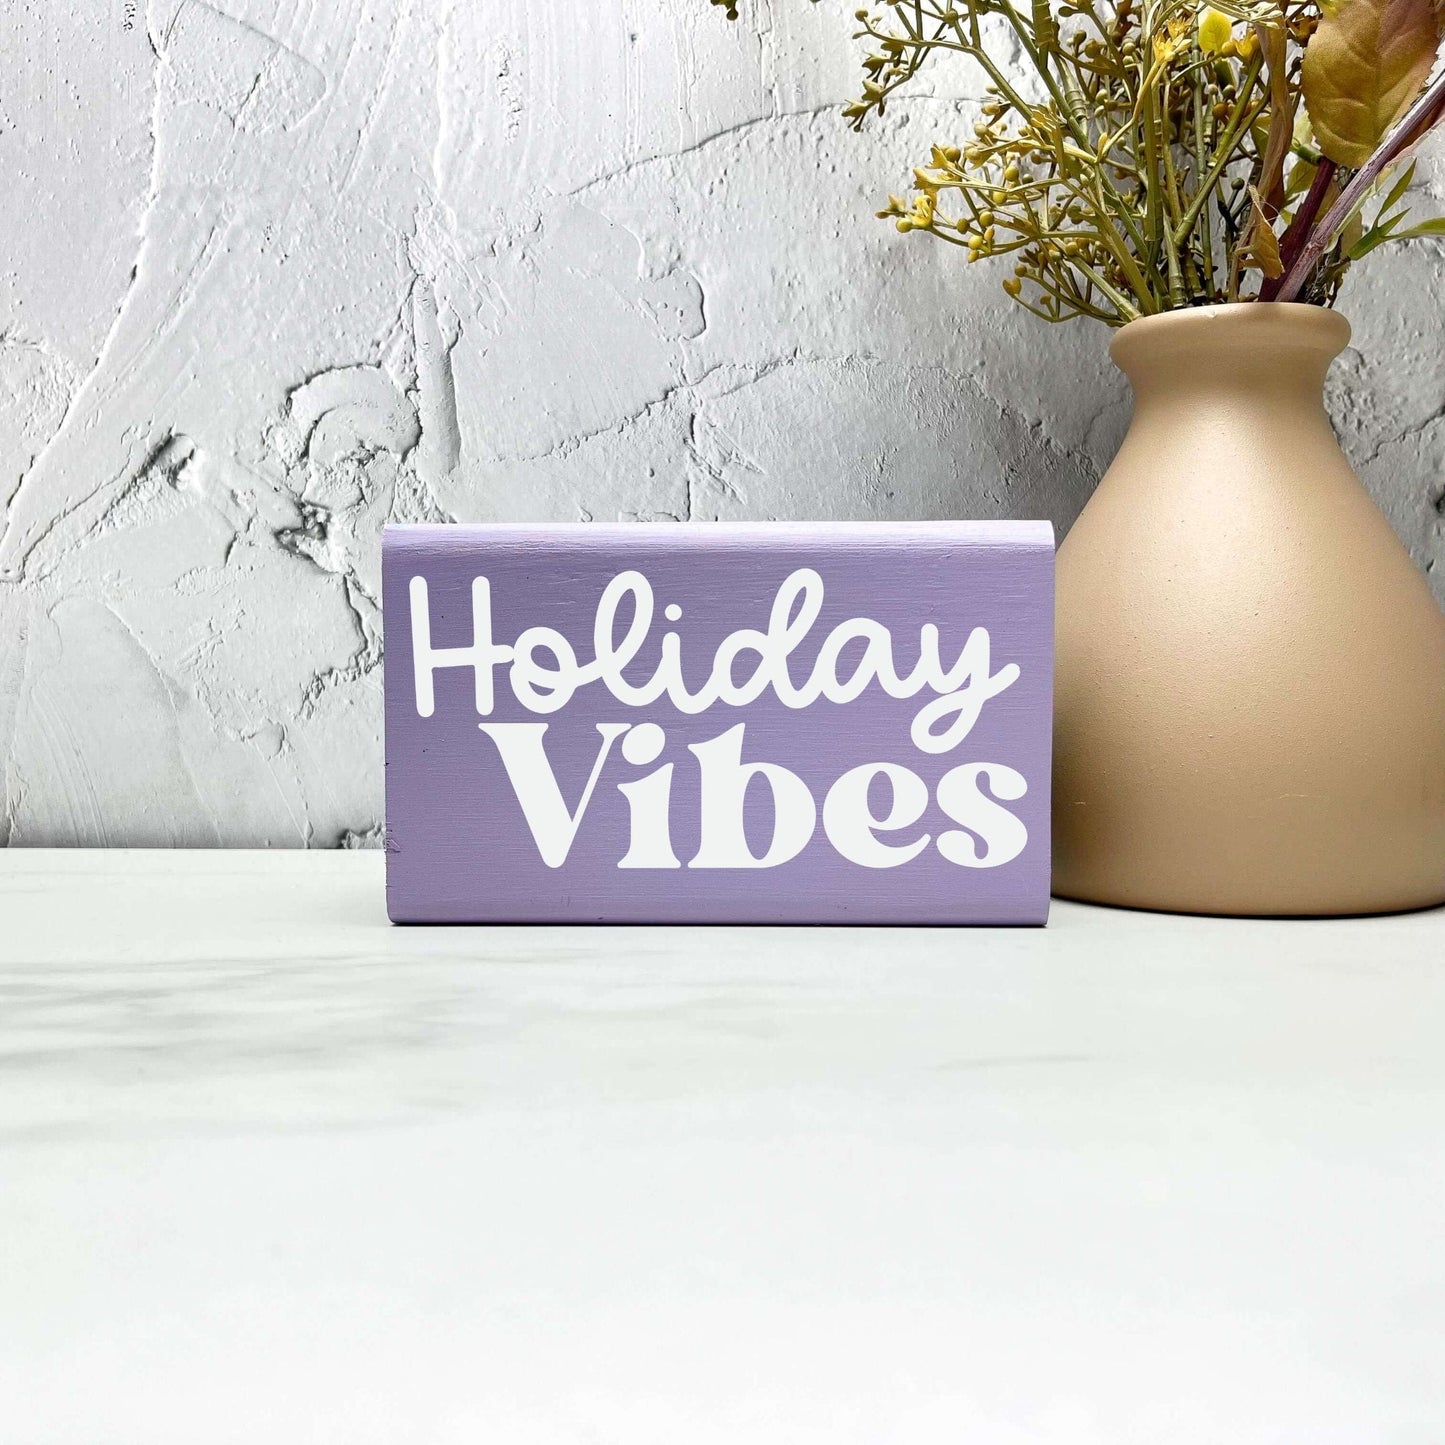 Holiday vibes sign, christmas wood signs, christmas decor, home decor